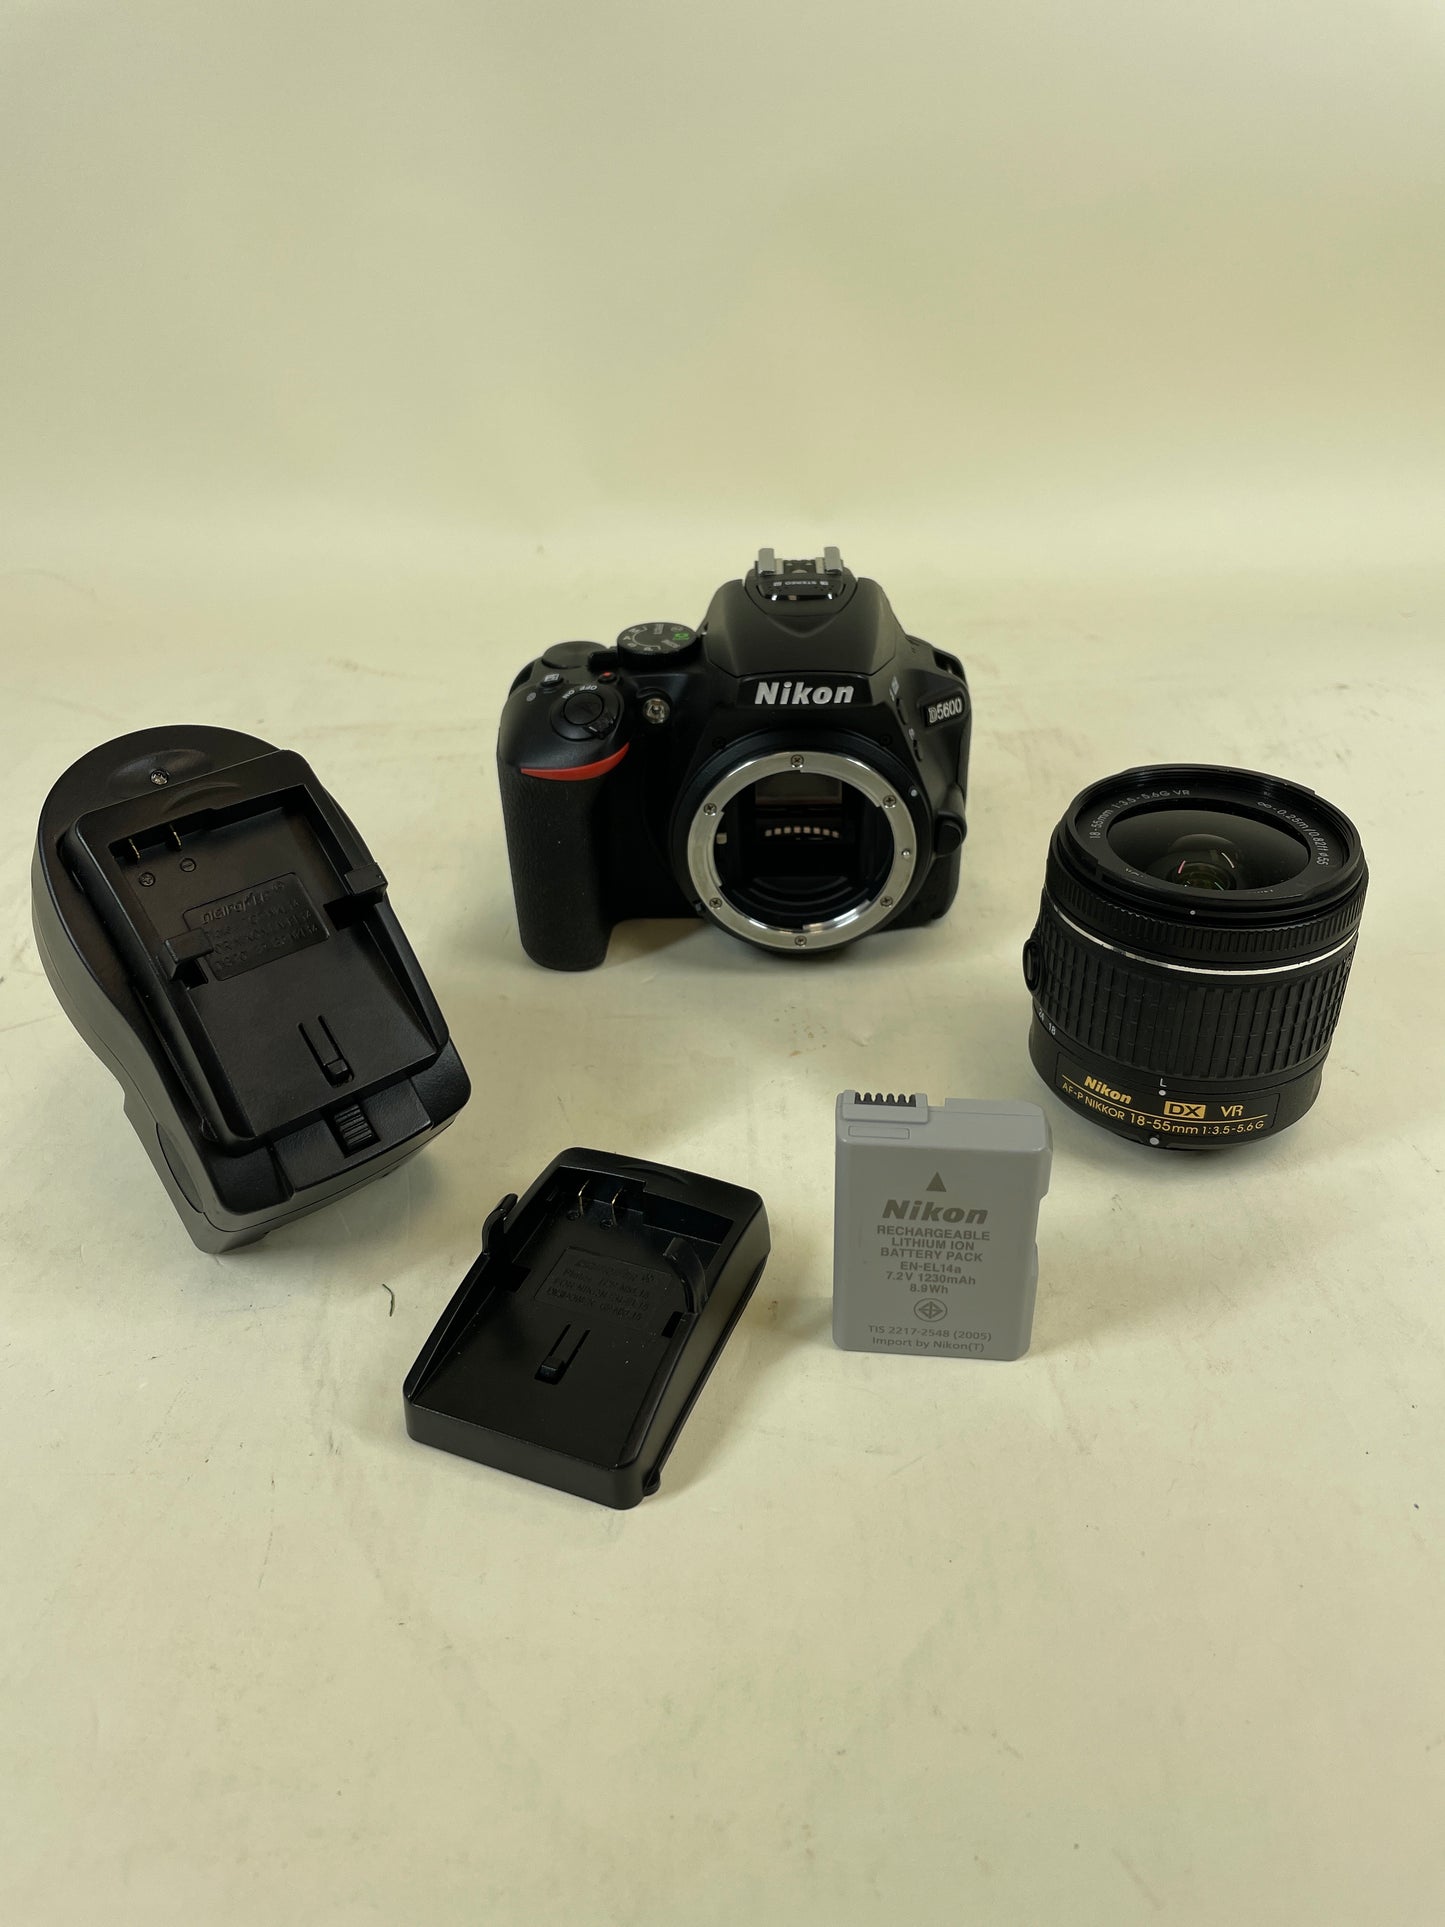 Nikon D5600 24.2MP DSLR Camera 1592 Shutter Count with Nikon AF-P DX 18-55mm lens